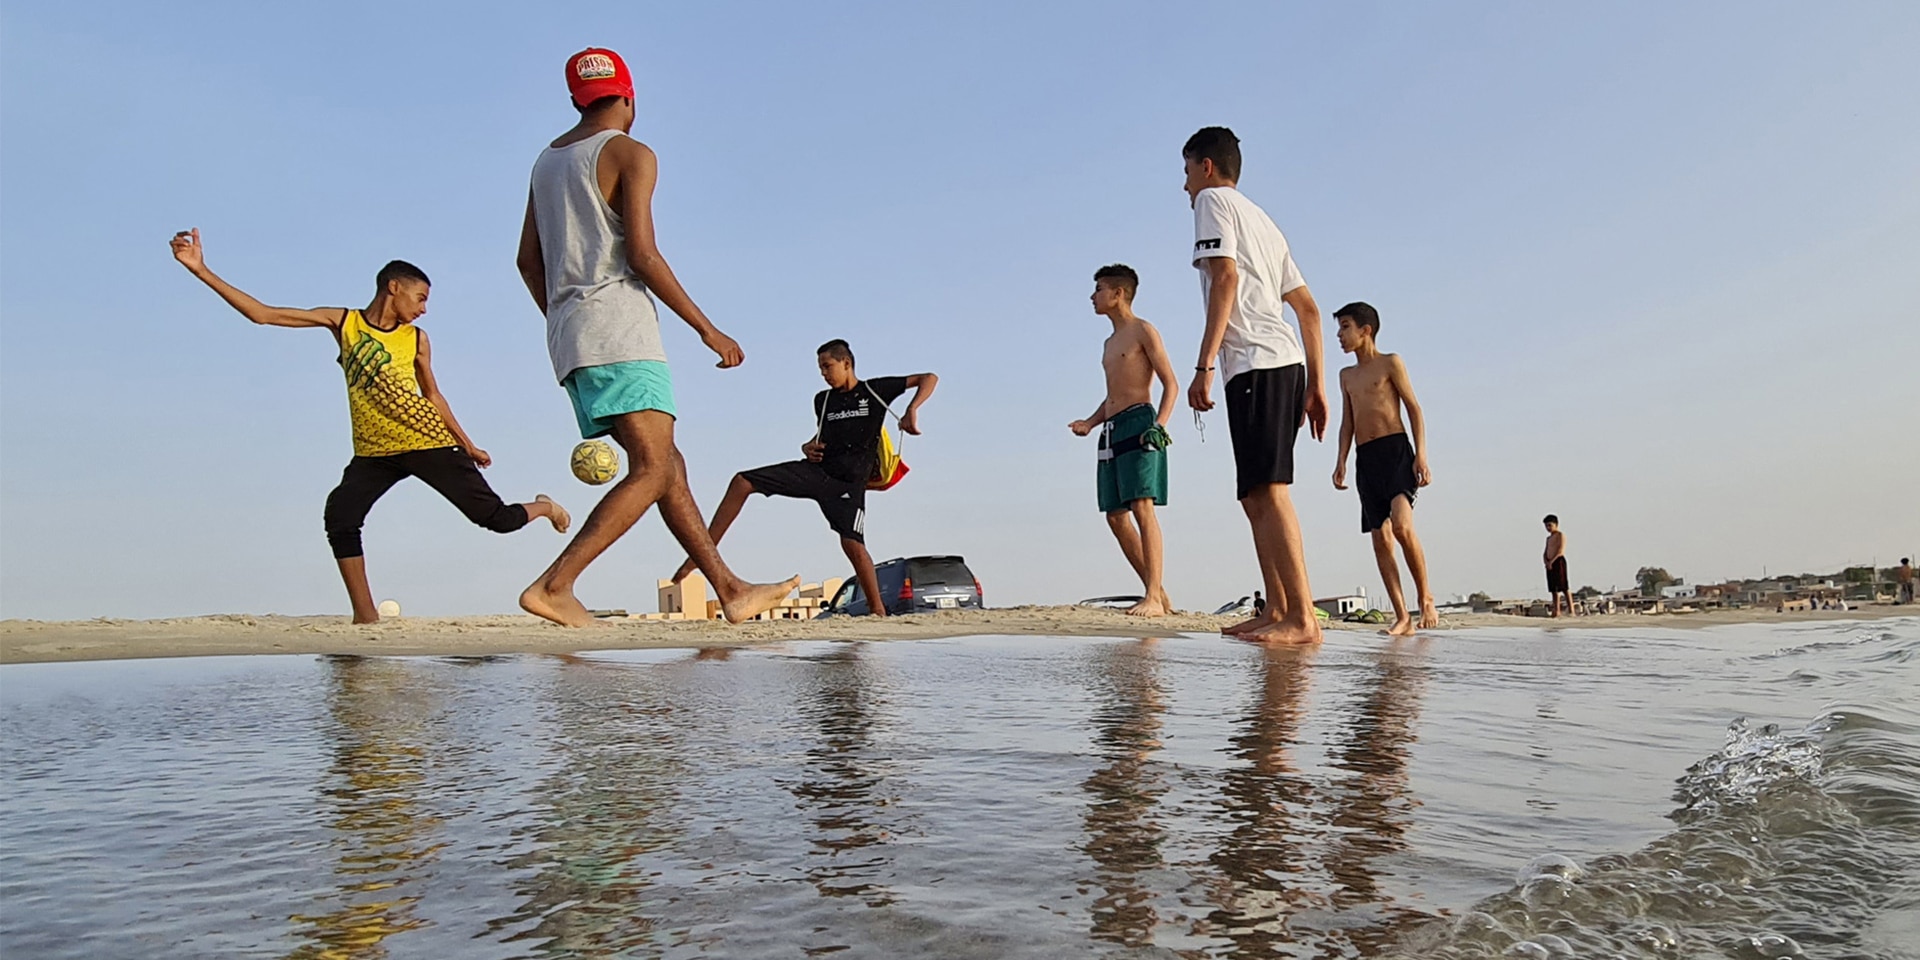 Des jeunes gens jouent au football sur une plage dans la ville de Garabulli, à 70km de la capitale Tripoli.